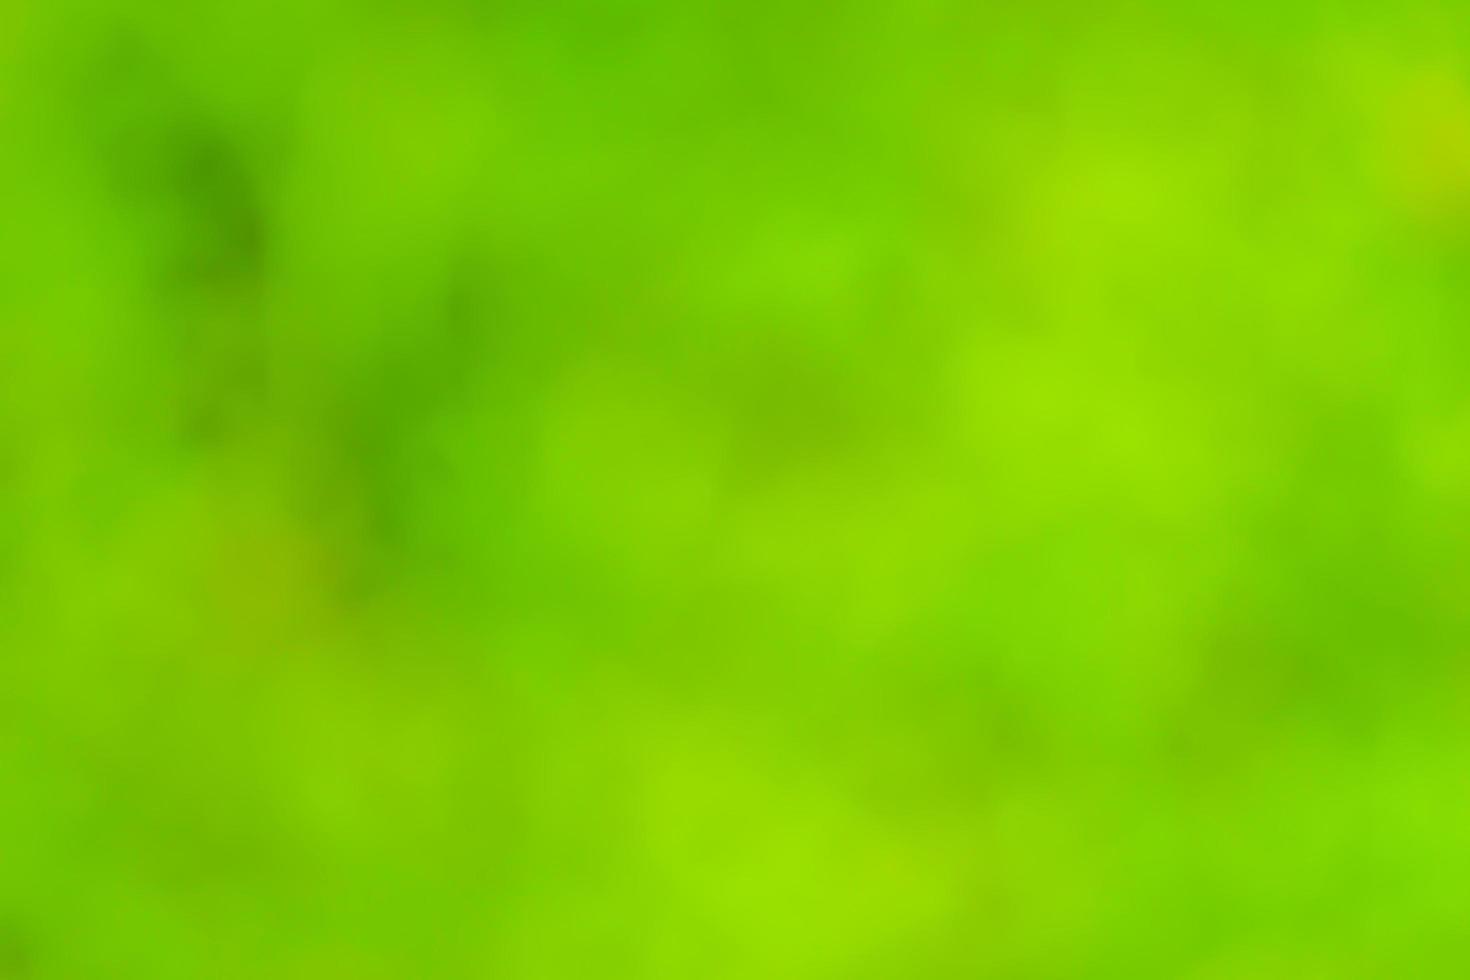 Blur green background photo